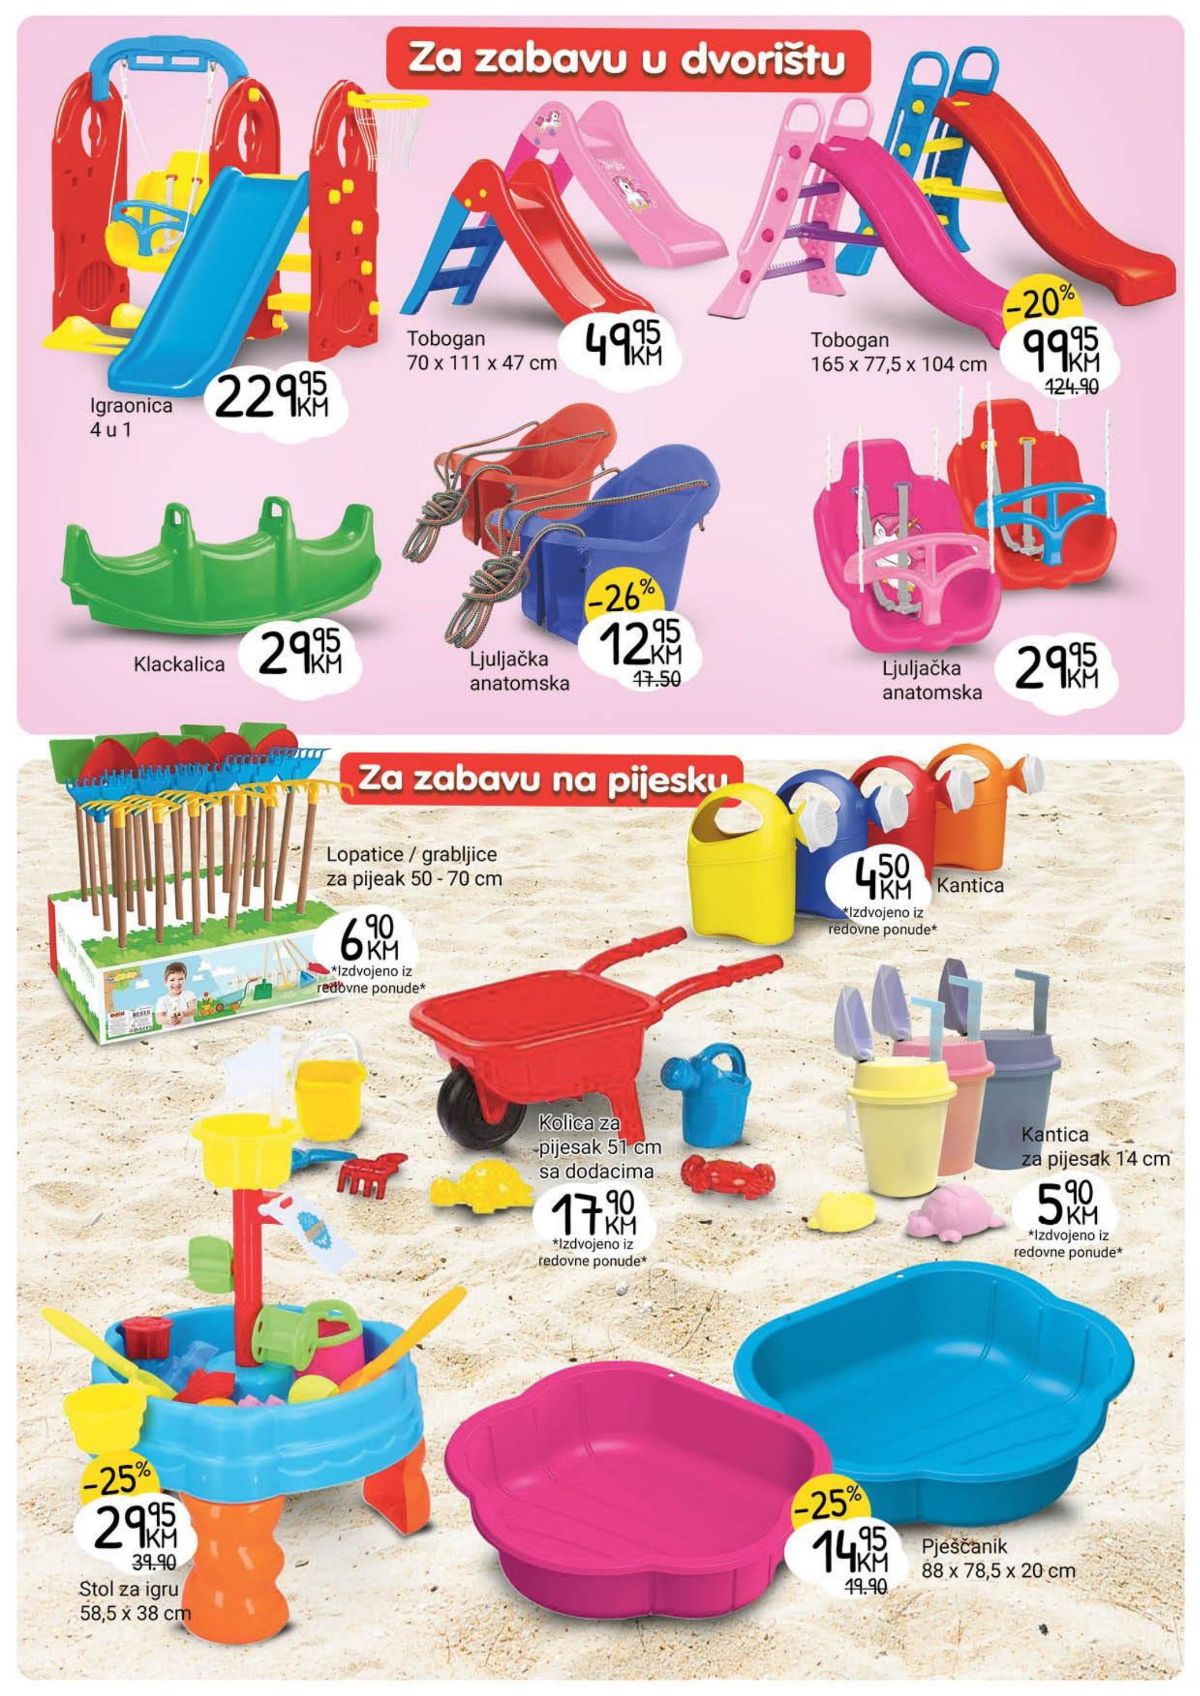 Bingo katalog sve za proljetnu zabavu i rekreaciju od 17.04. do 15.05. - stranica 4 tobogan i zabava u pijesku